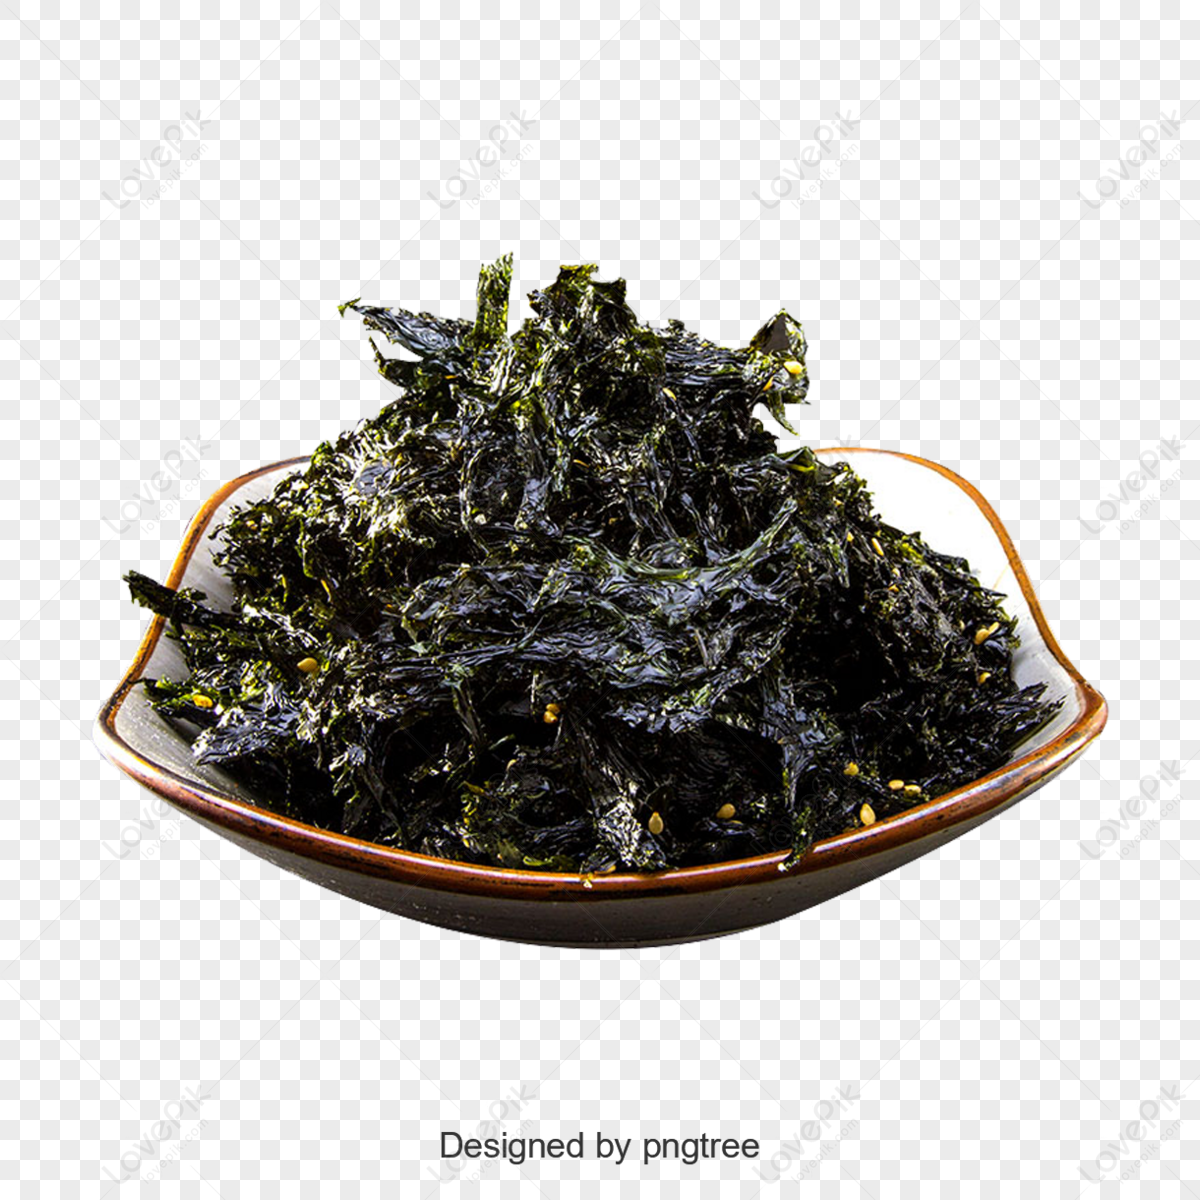 Simple Korea food-Seaweed,plates,vegetable,korea festival korea png hd transparent image